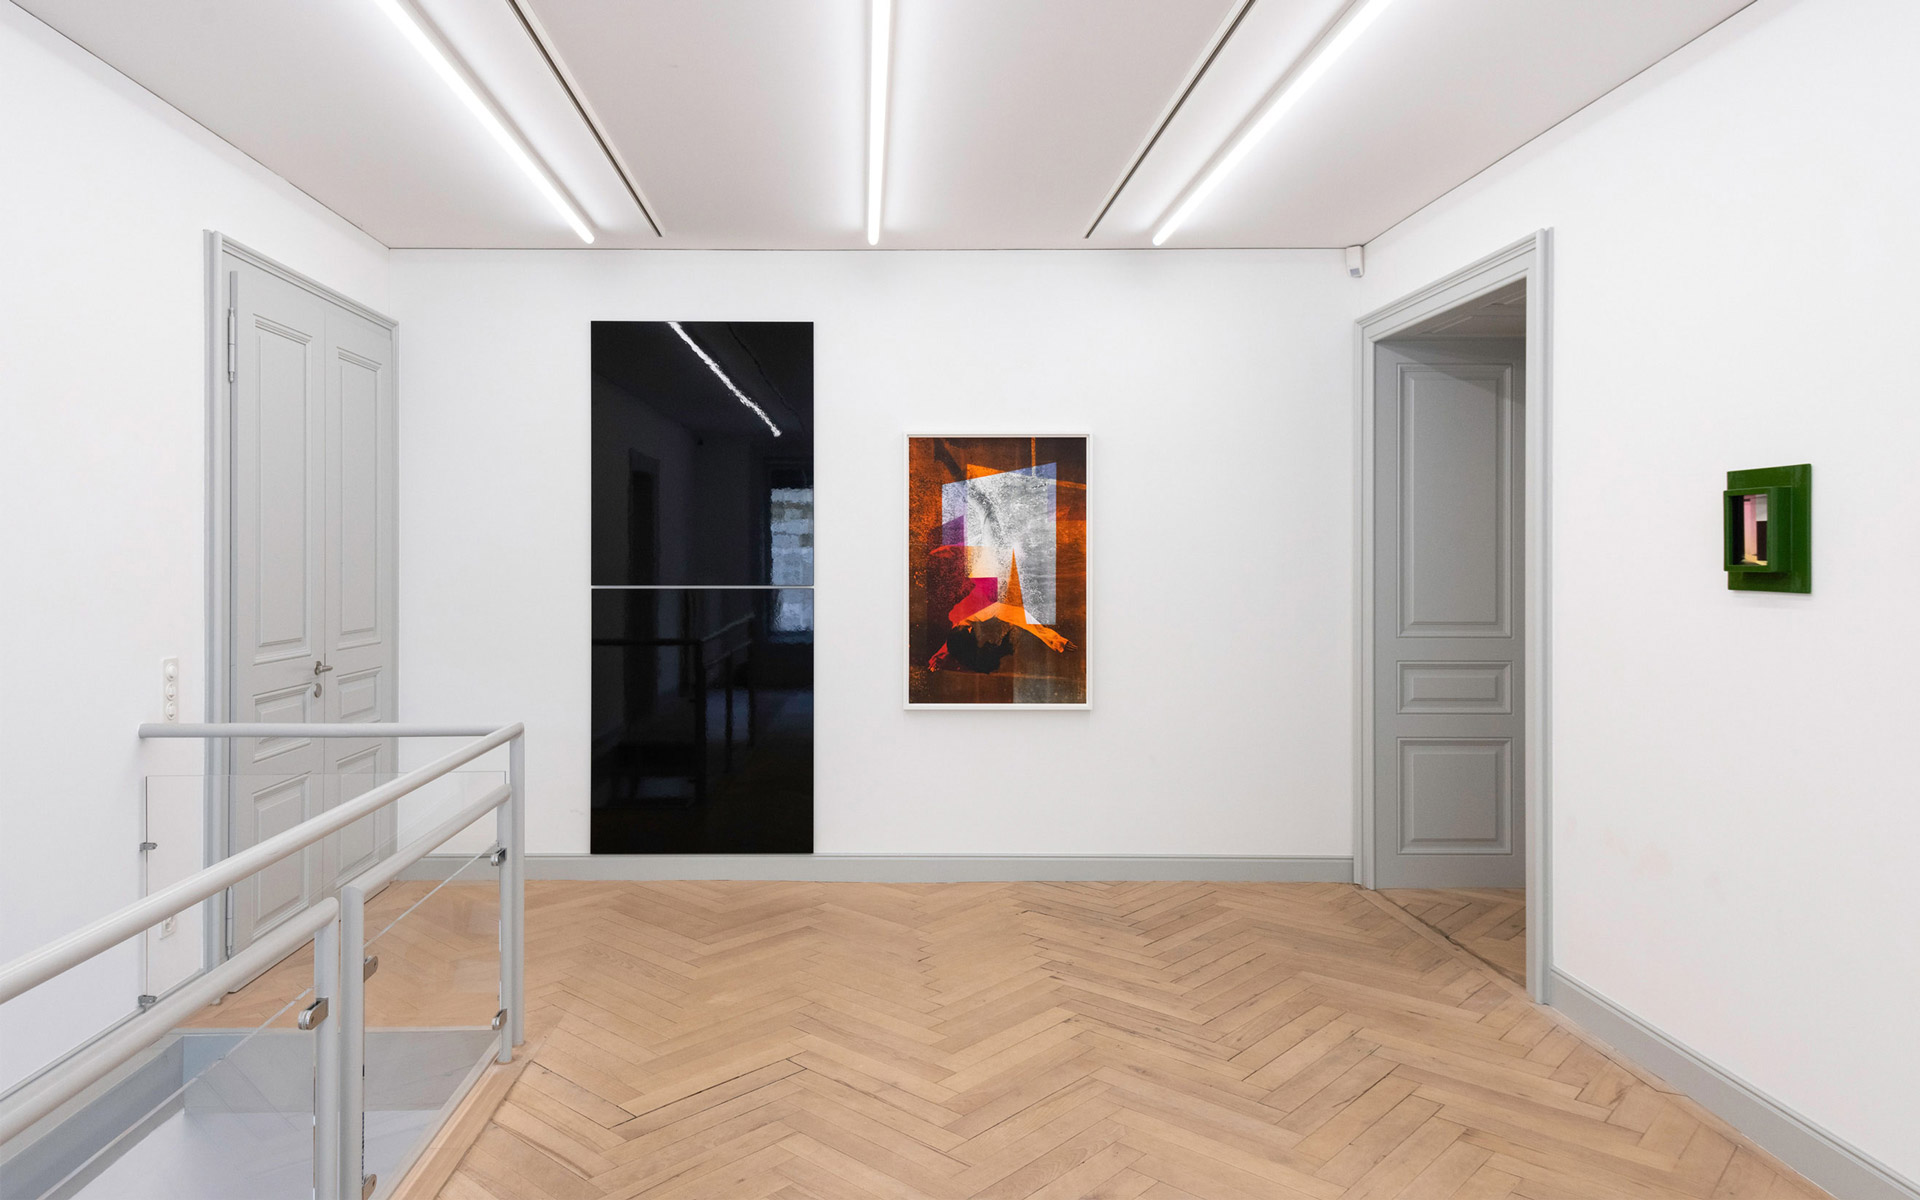 Installation view, Galerie Peter Kilchmann